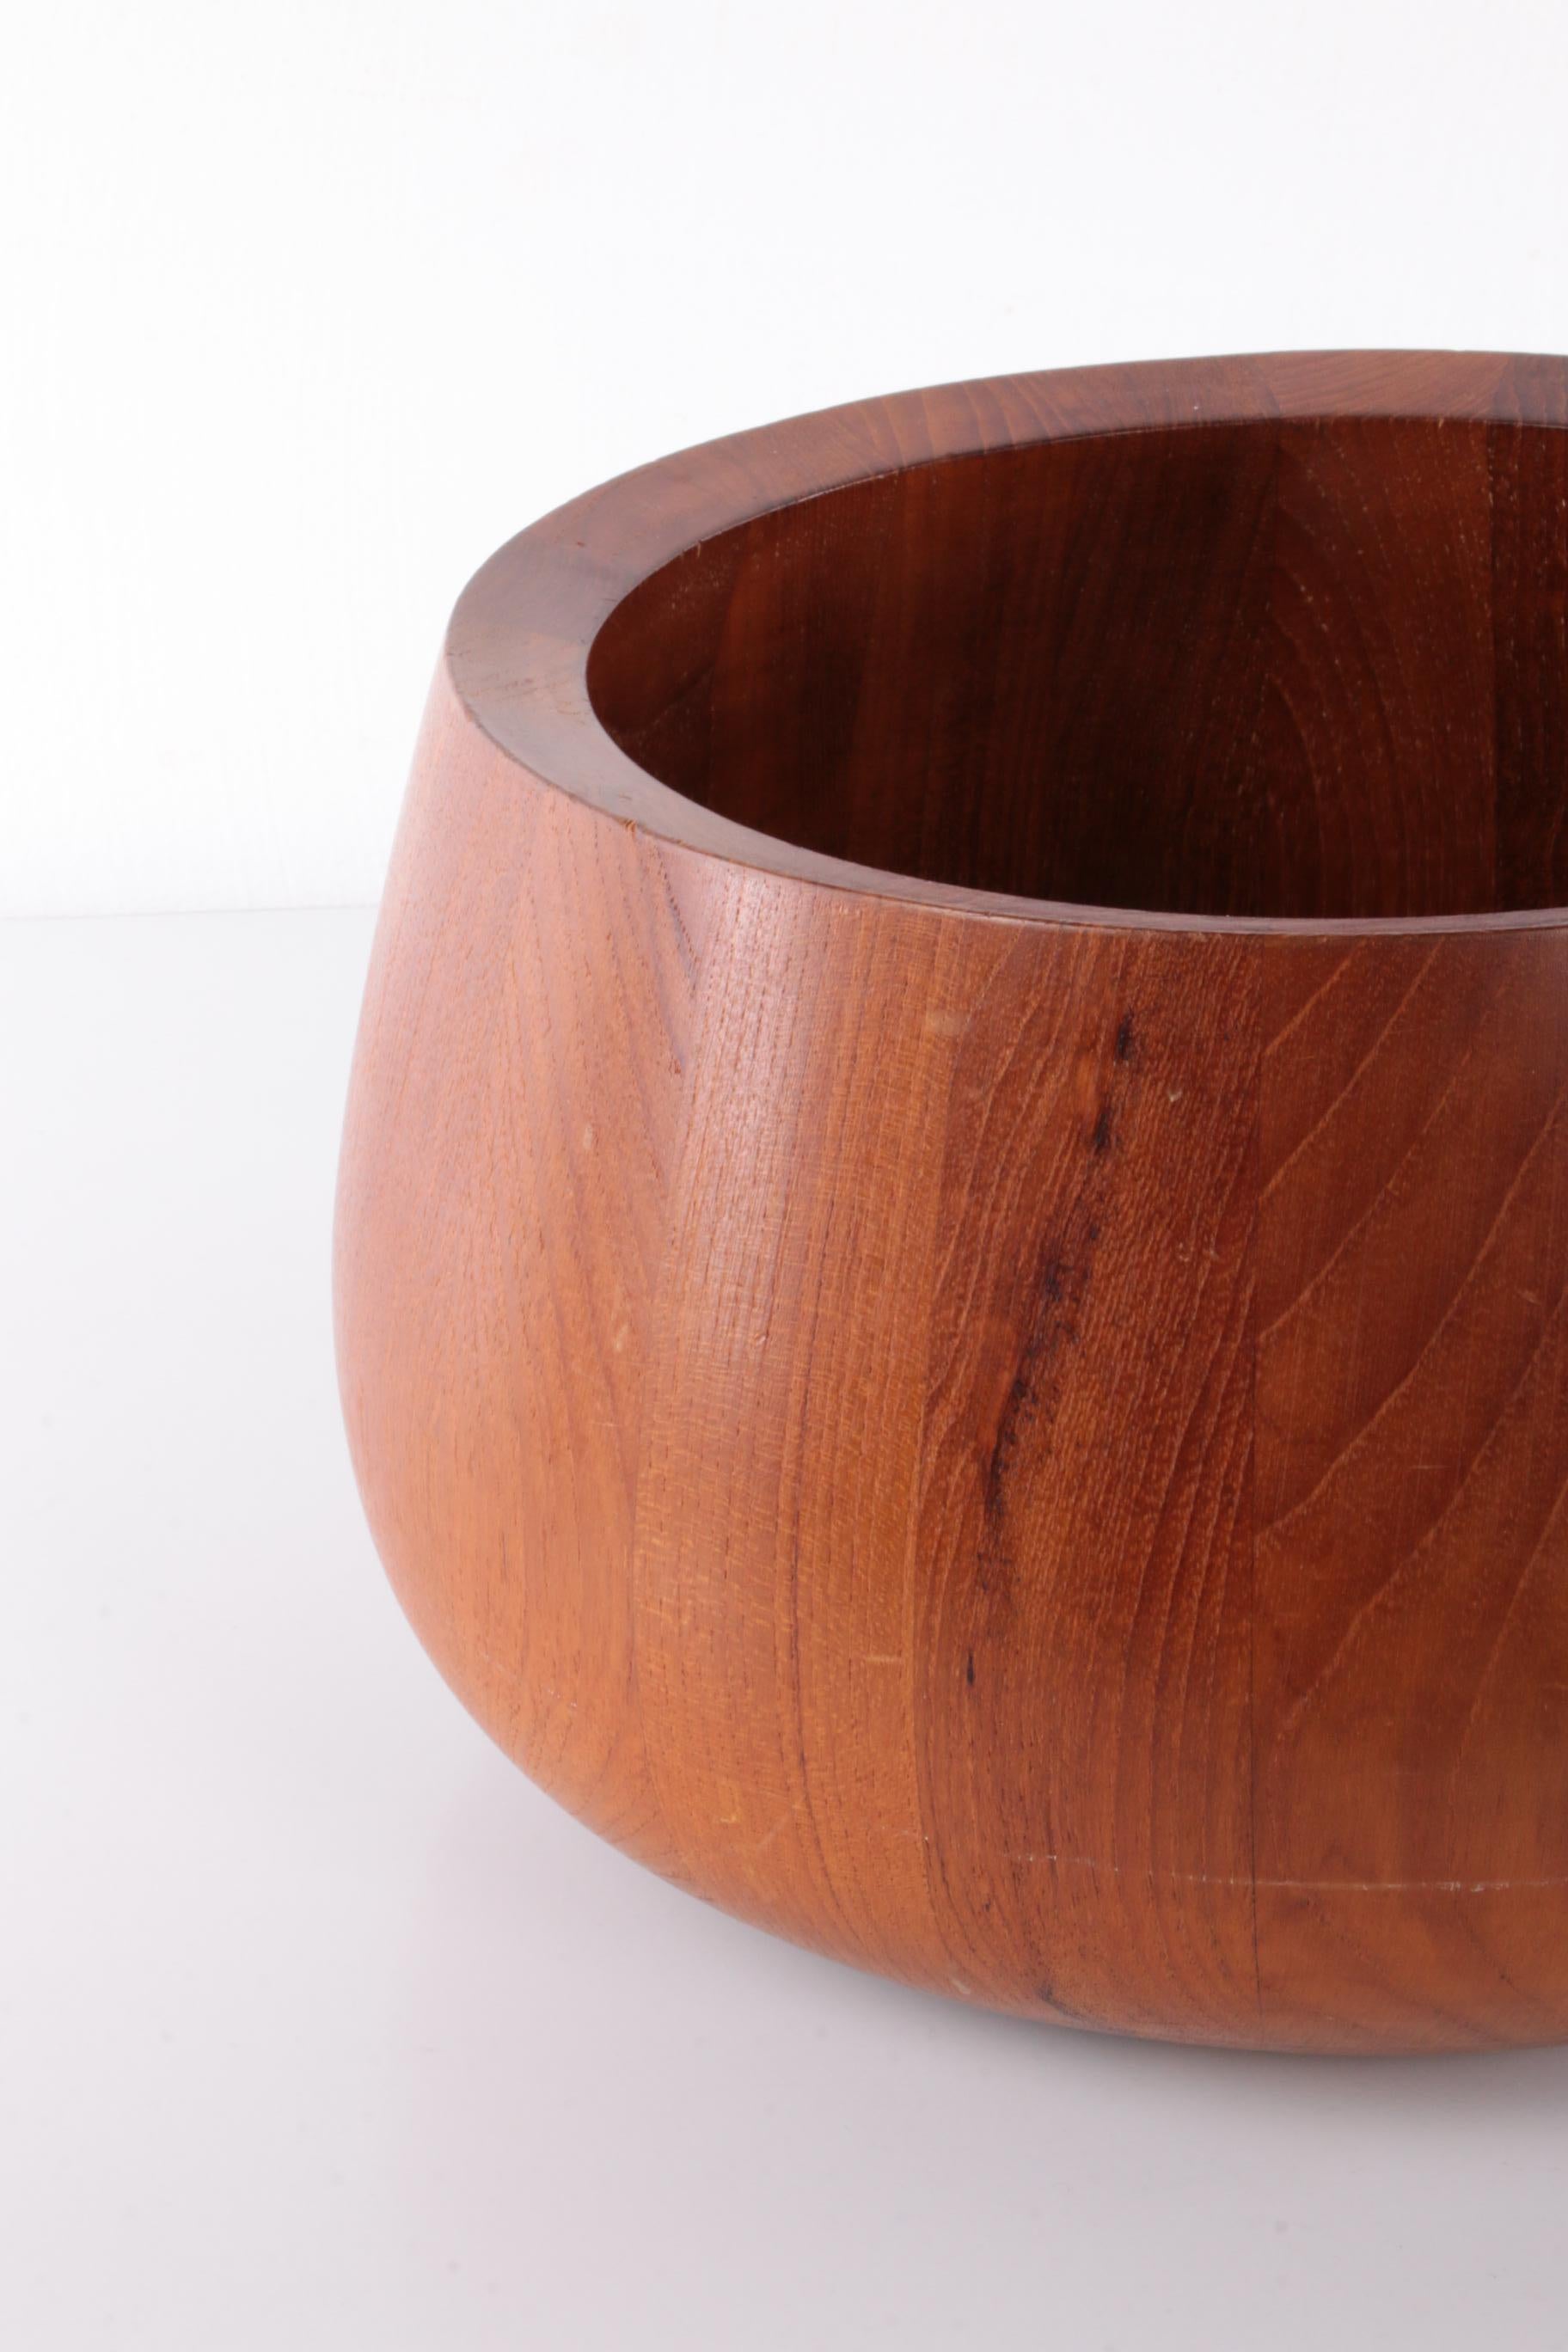 Teak Wooden Bowl & Salad Servers by Jens Quistgaard Made in Dansk Design 1